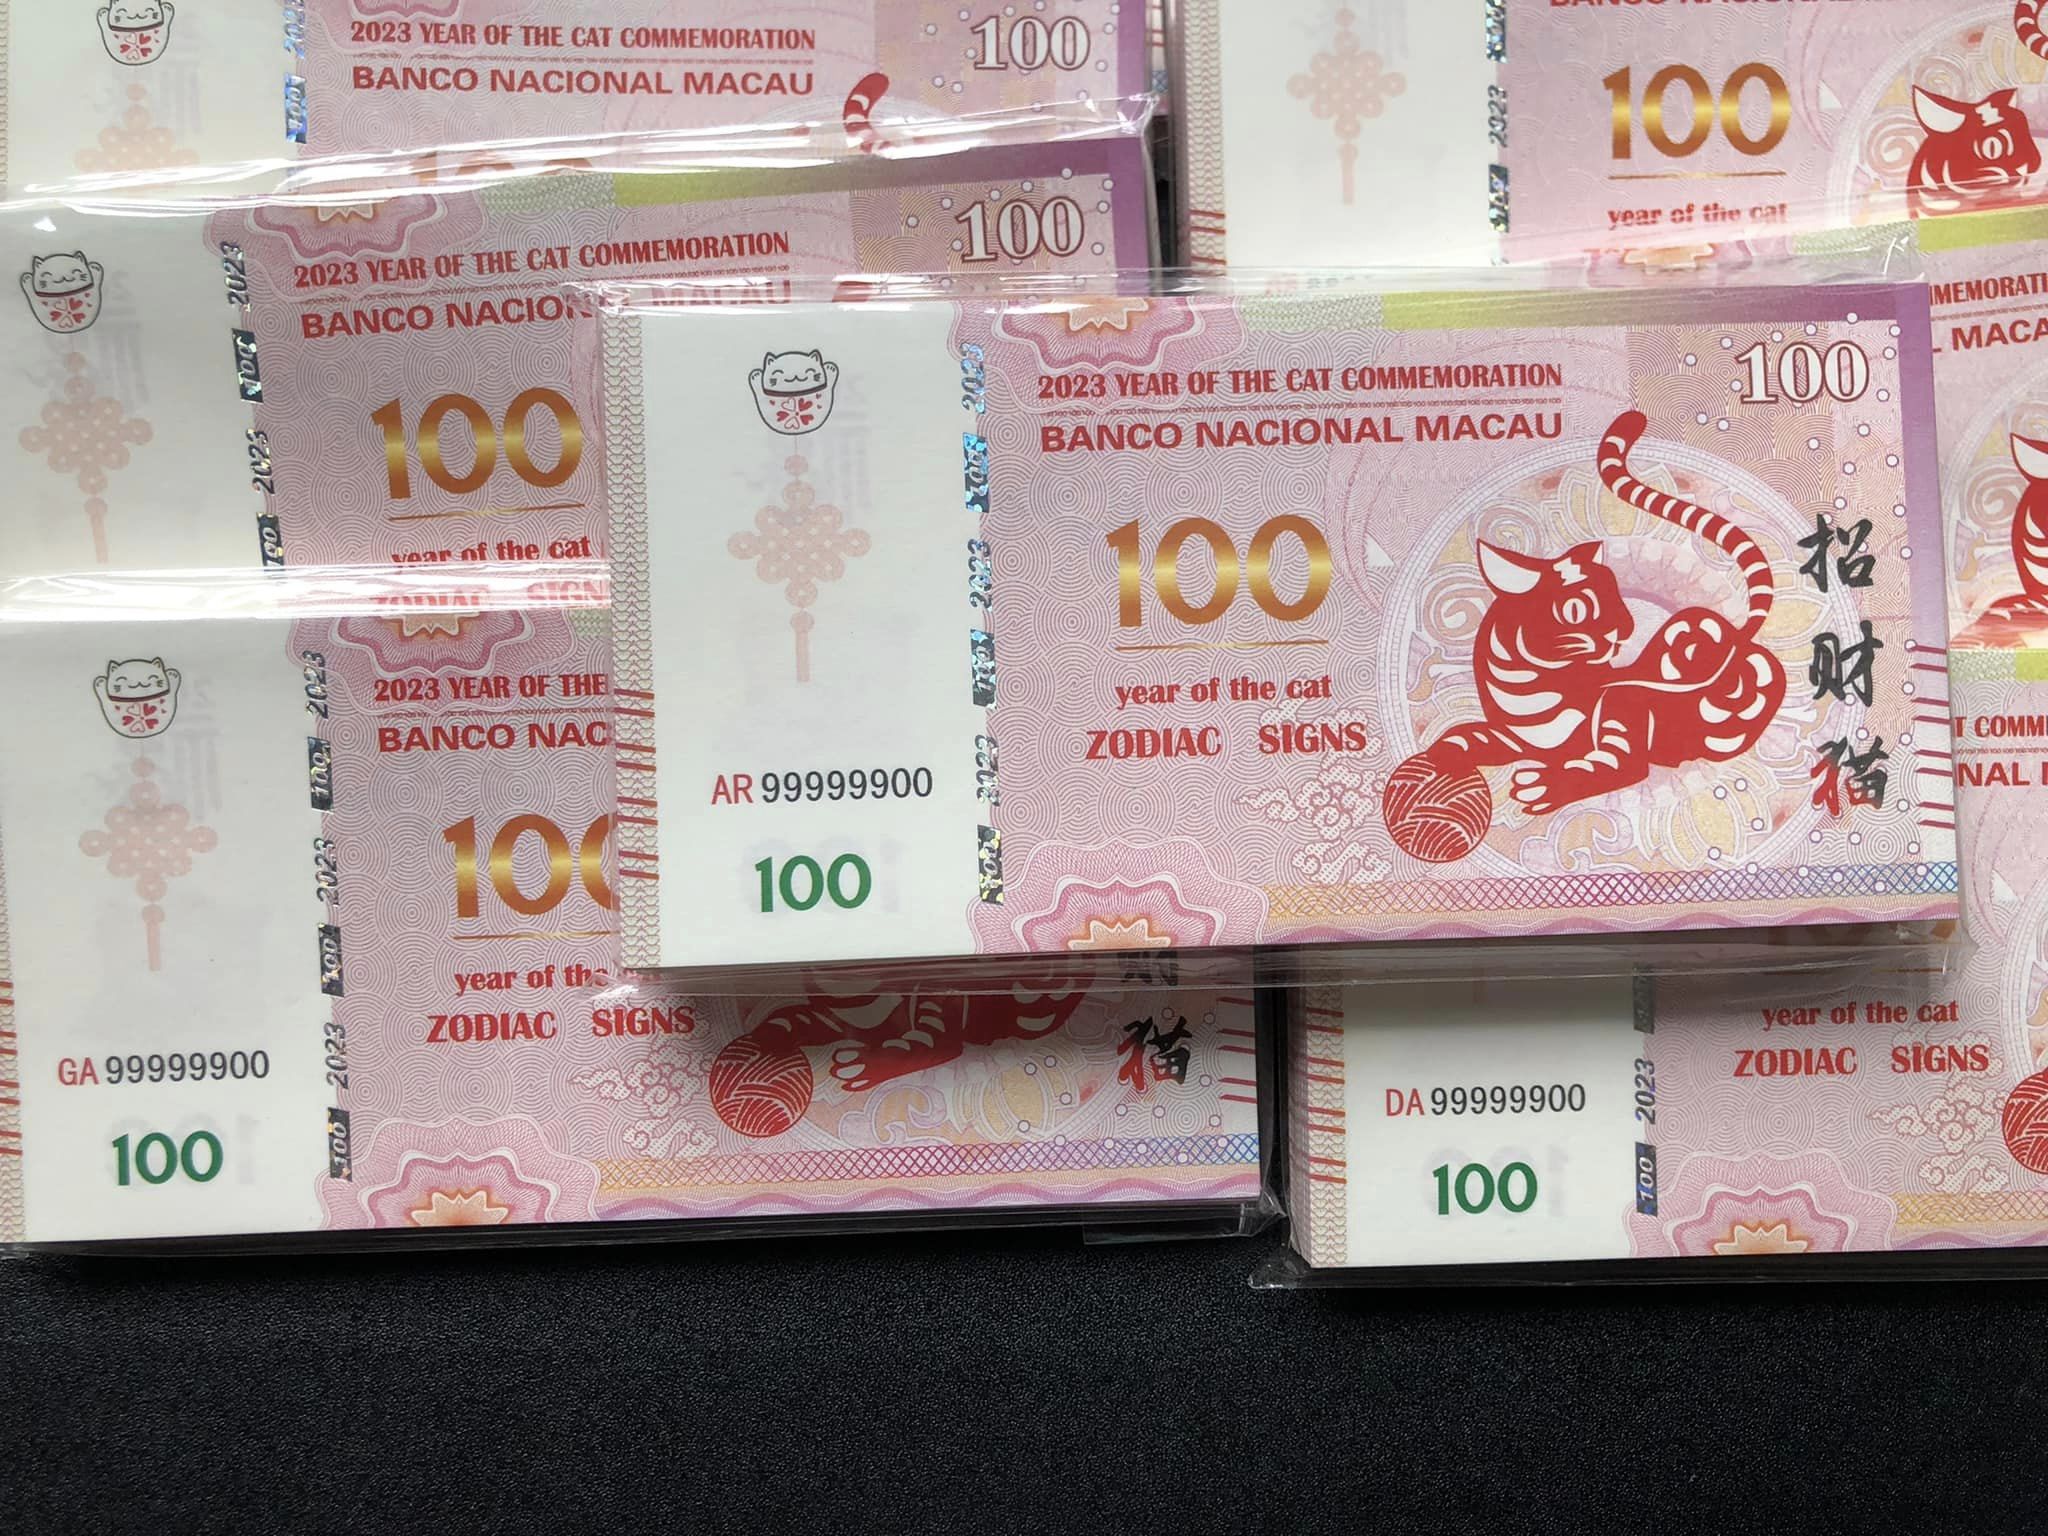 Tiền Con Mèo Macao kỷ niệm 2023 Mệnh Giá 100 Lì Xì Tết độc đáo